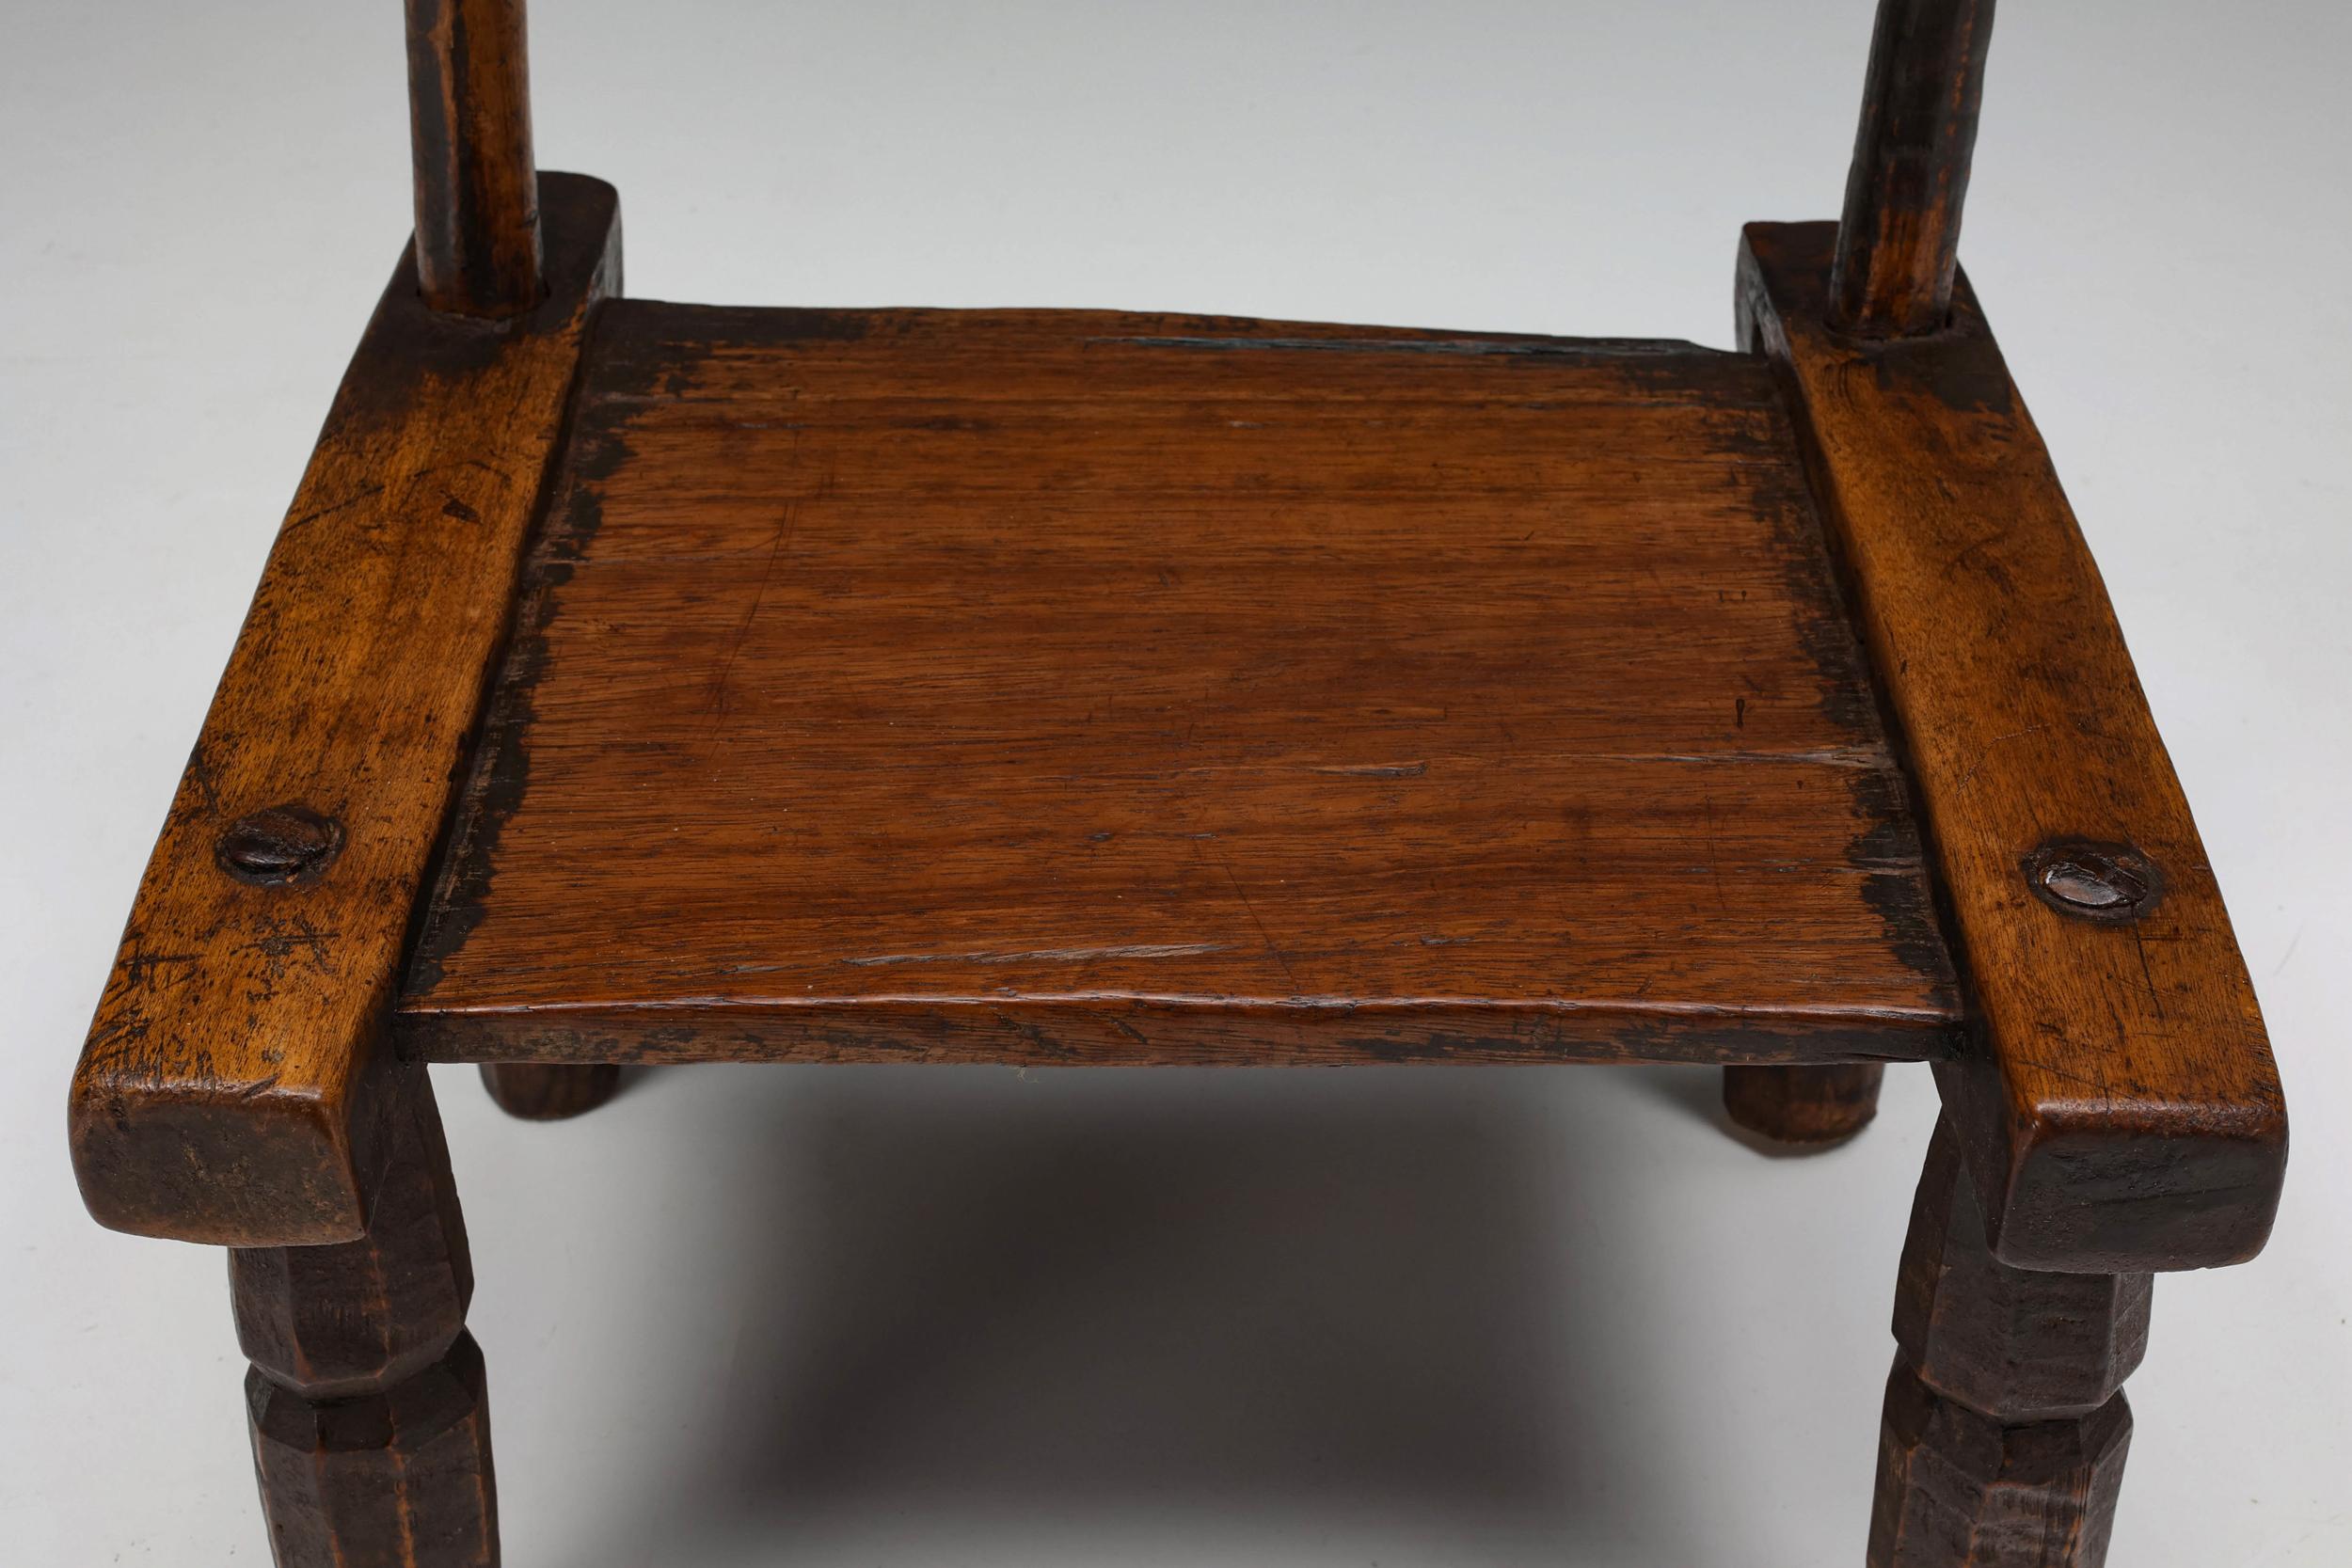 Wood Rustic Wabi-Sabi Arm Chair, Patina, Craftsmanship, 1890's